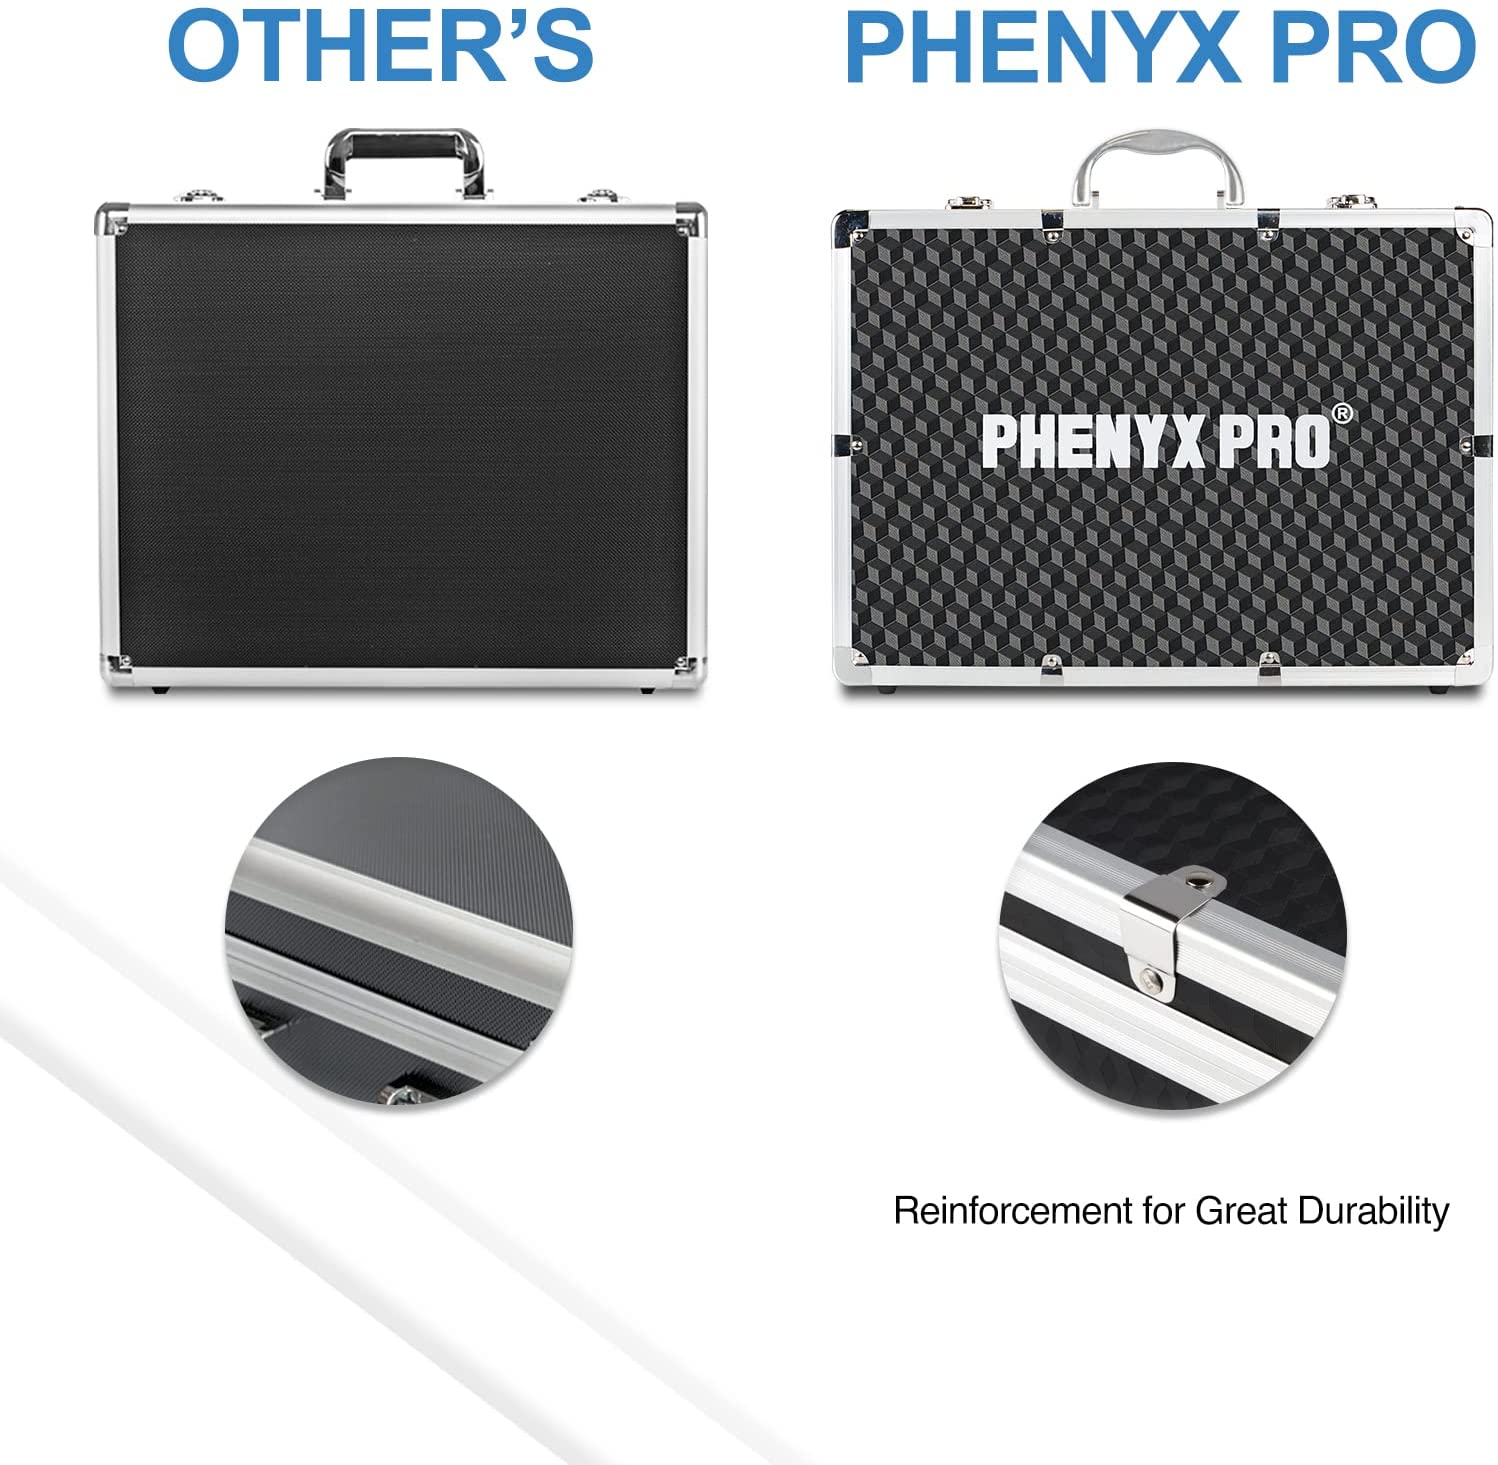 Phenyx Pro Carrying Case (Large Size)